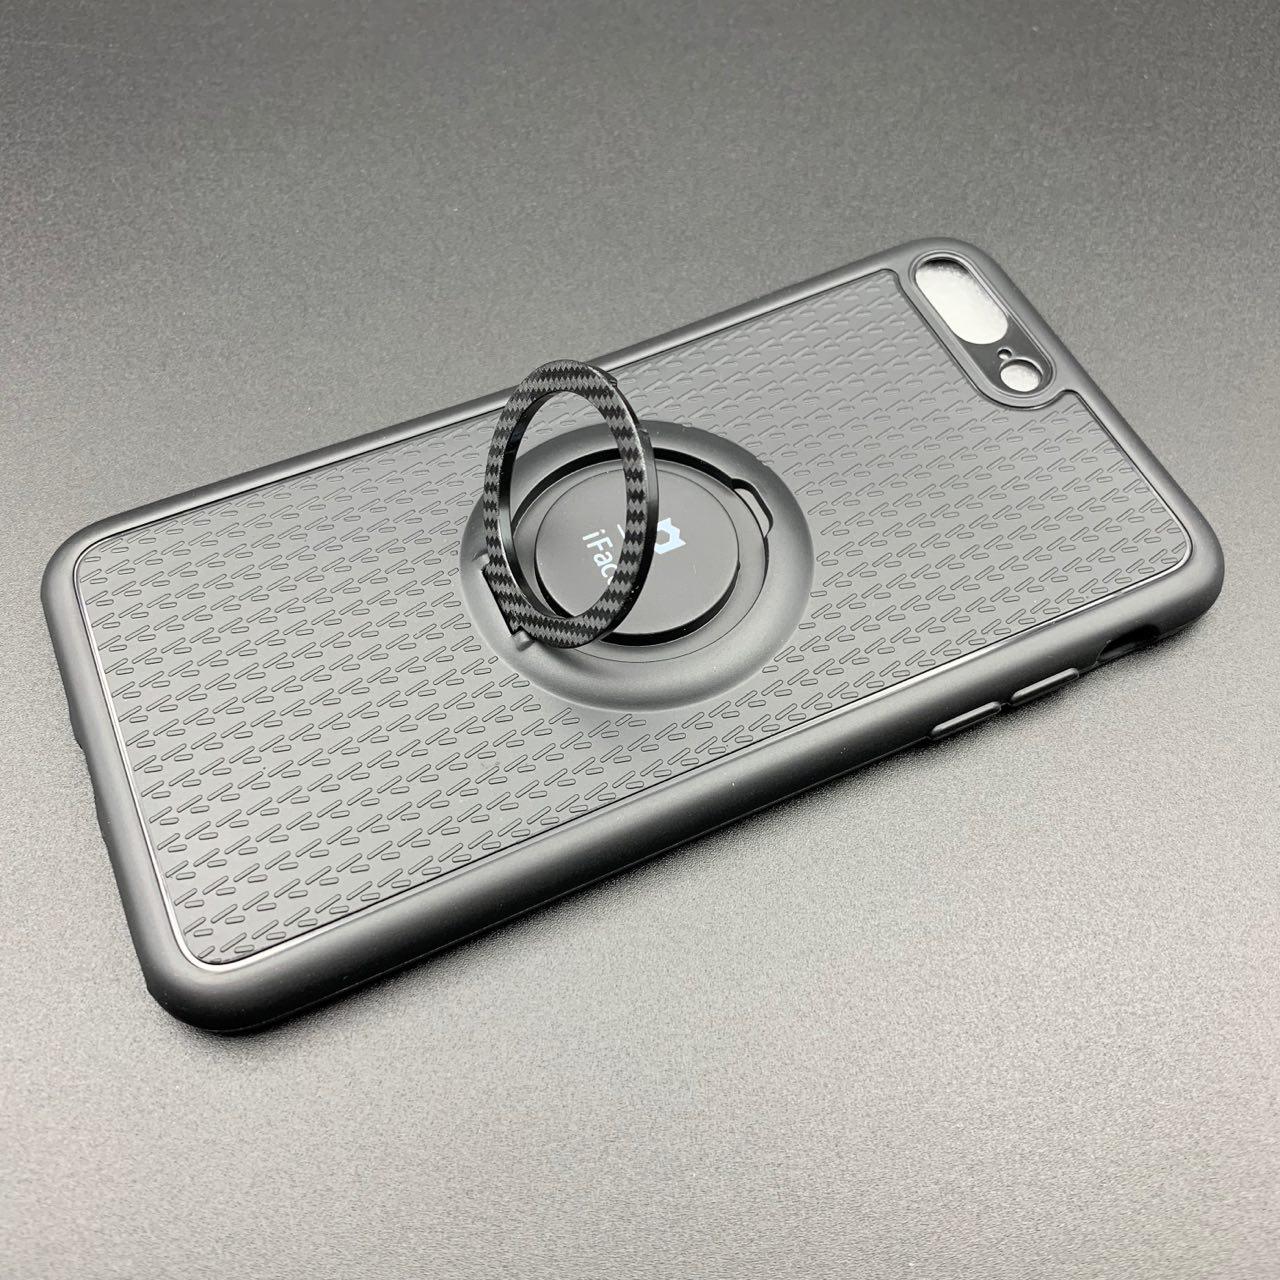 Чехол накладка iFace для APPLE iPhone 7, 8 Plus, силикон, металл, кольцо держатель, цвет черный.